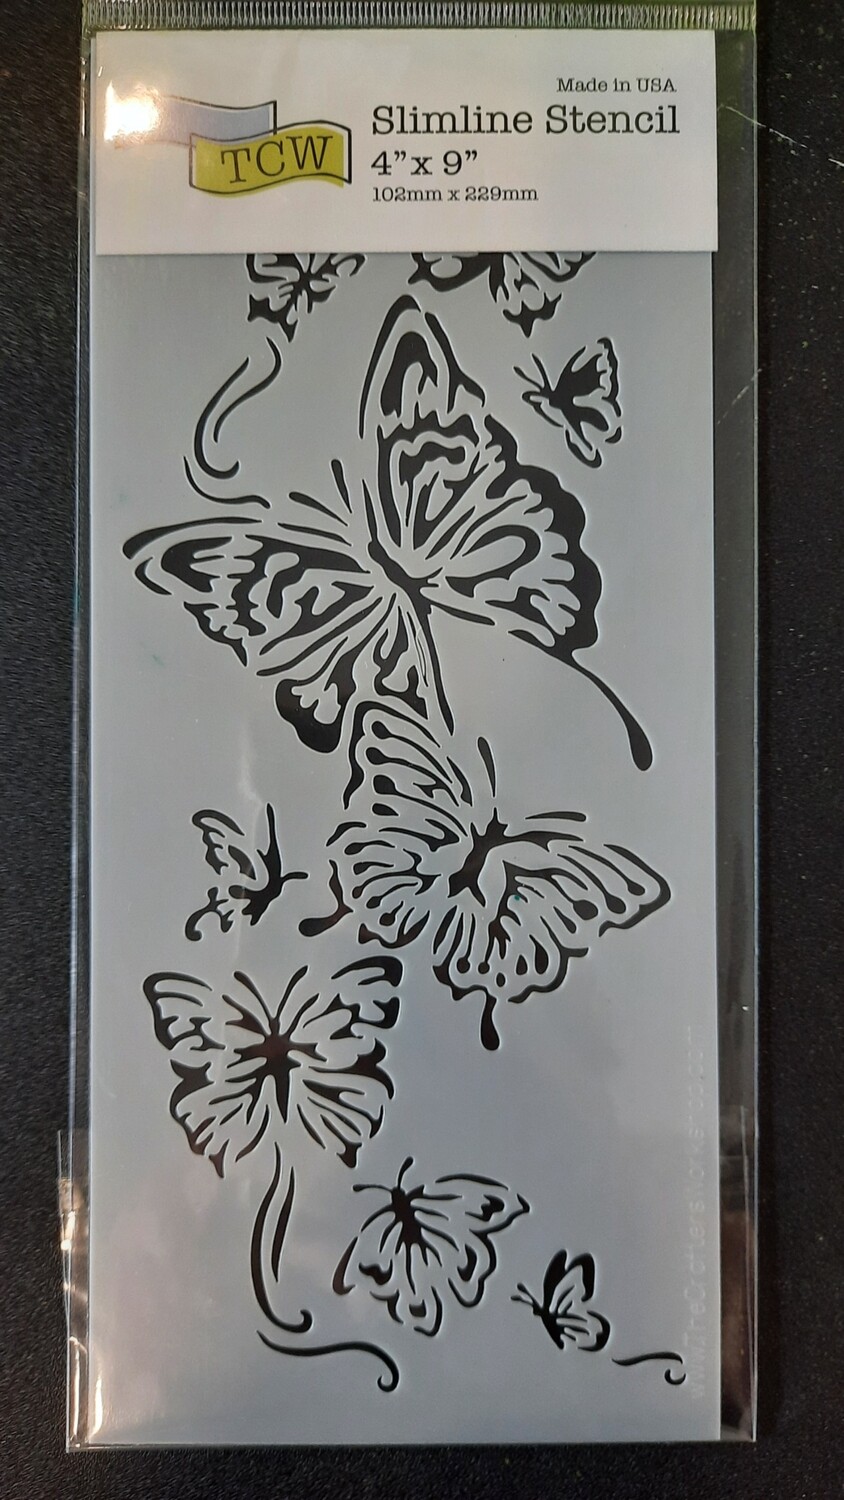 Slimline stencil flying butterflies